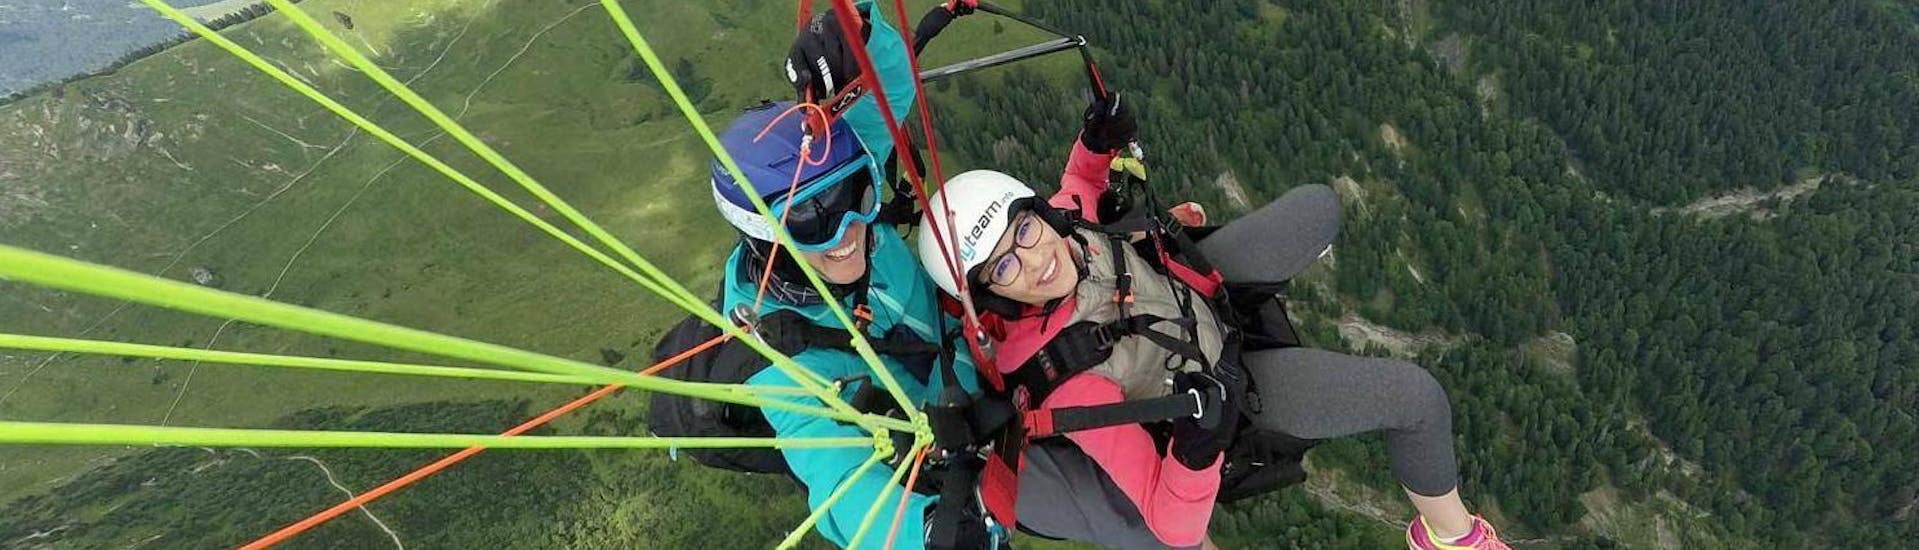 Thermisch tandem paragliding in Reutte - Reuttener Hahnenkamm.